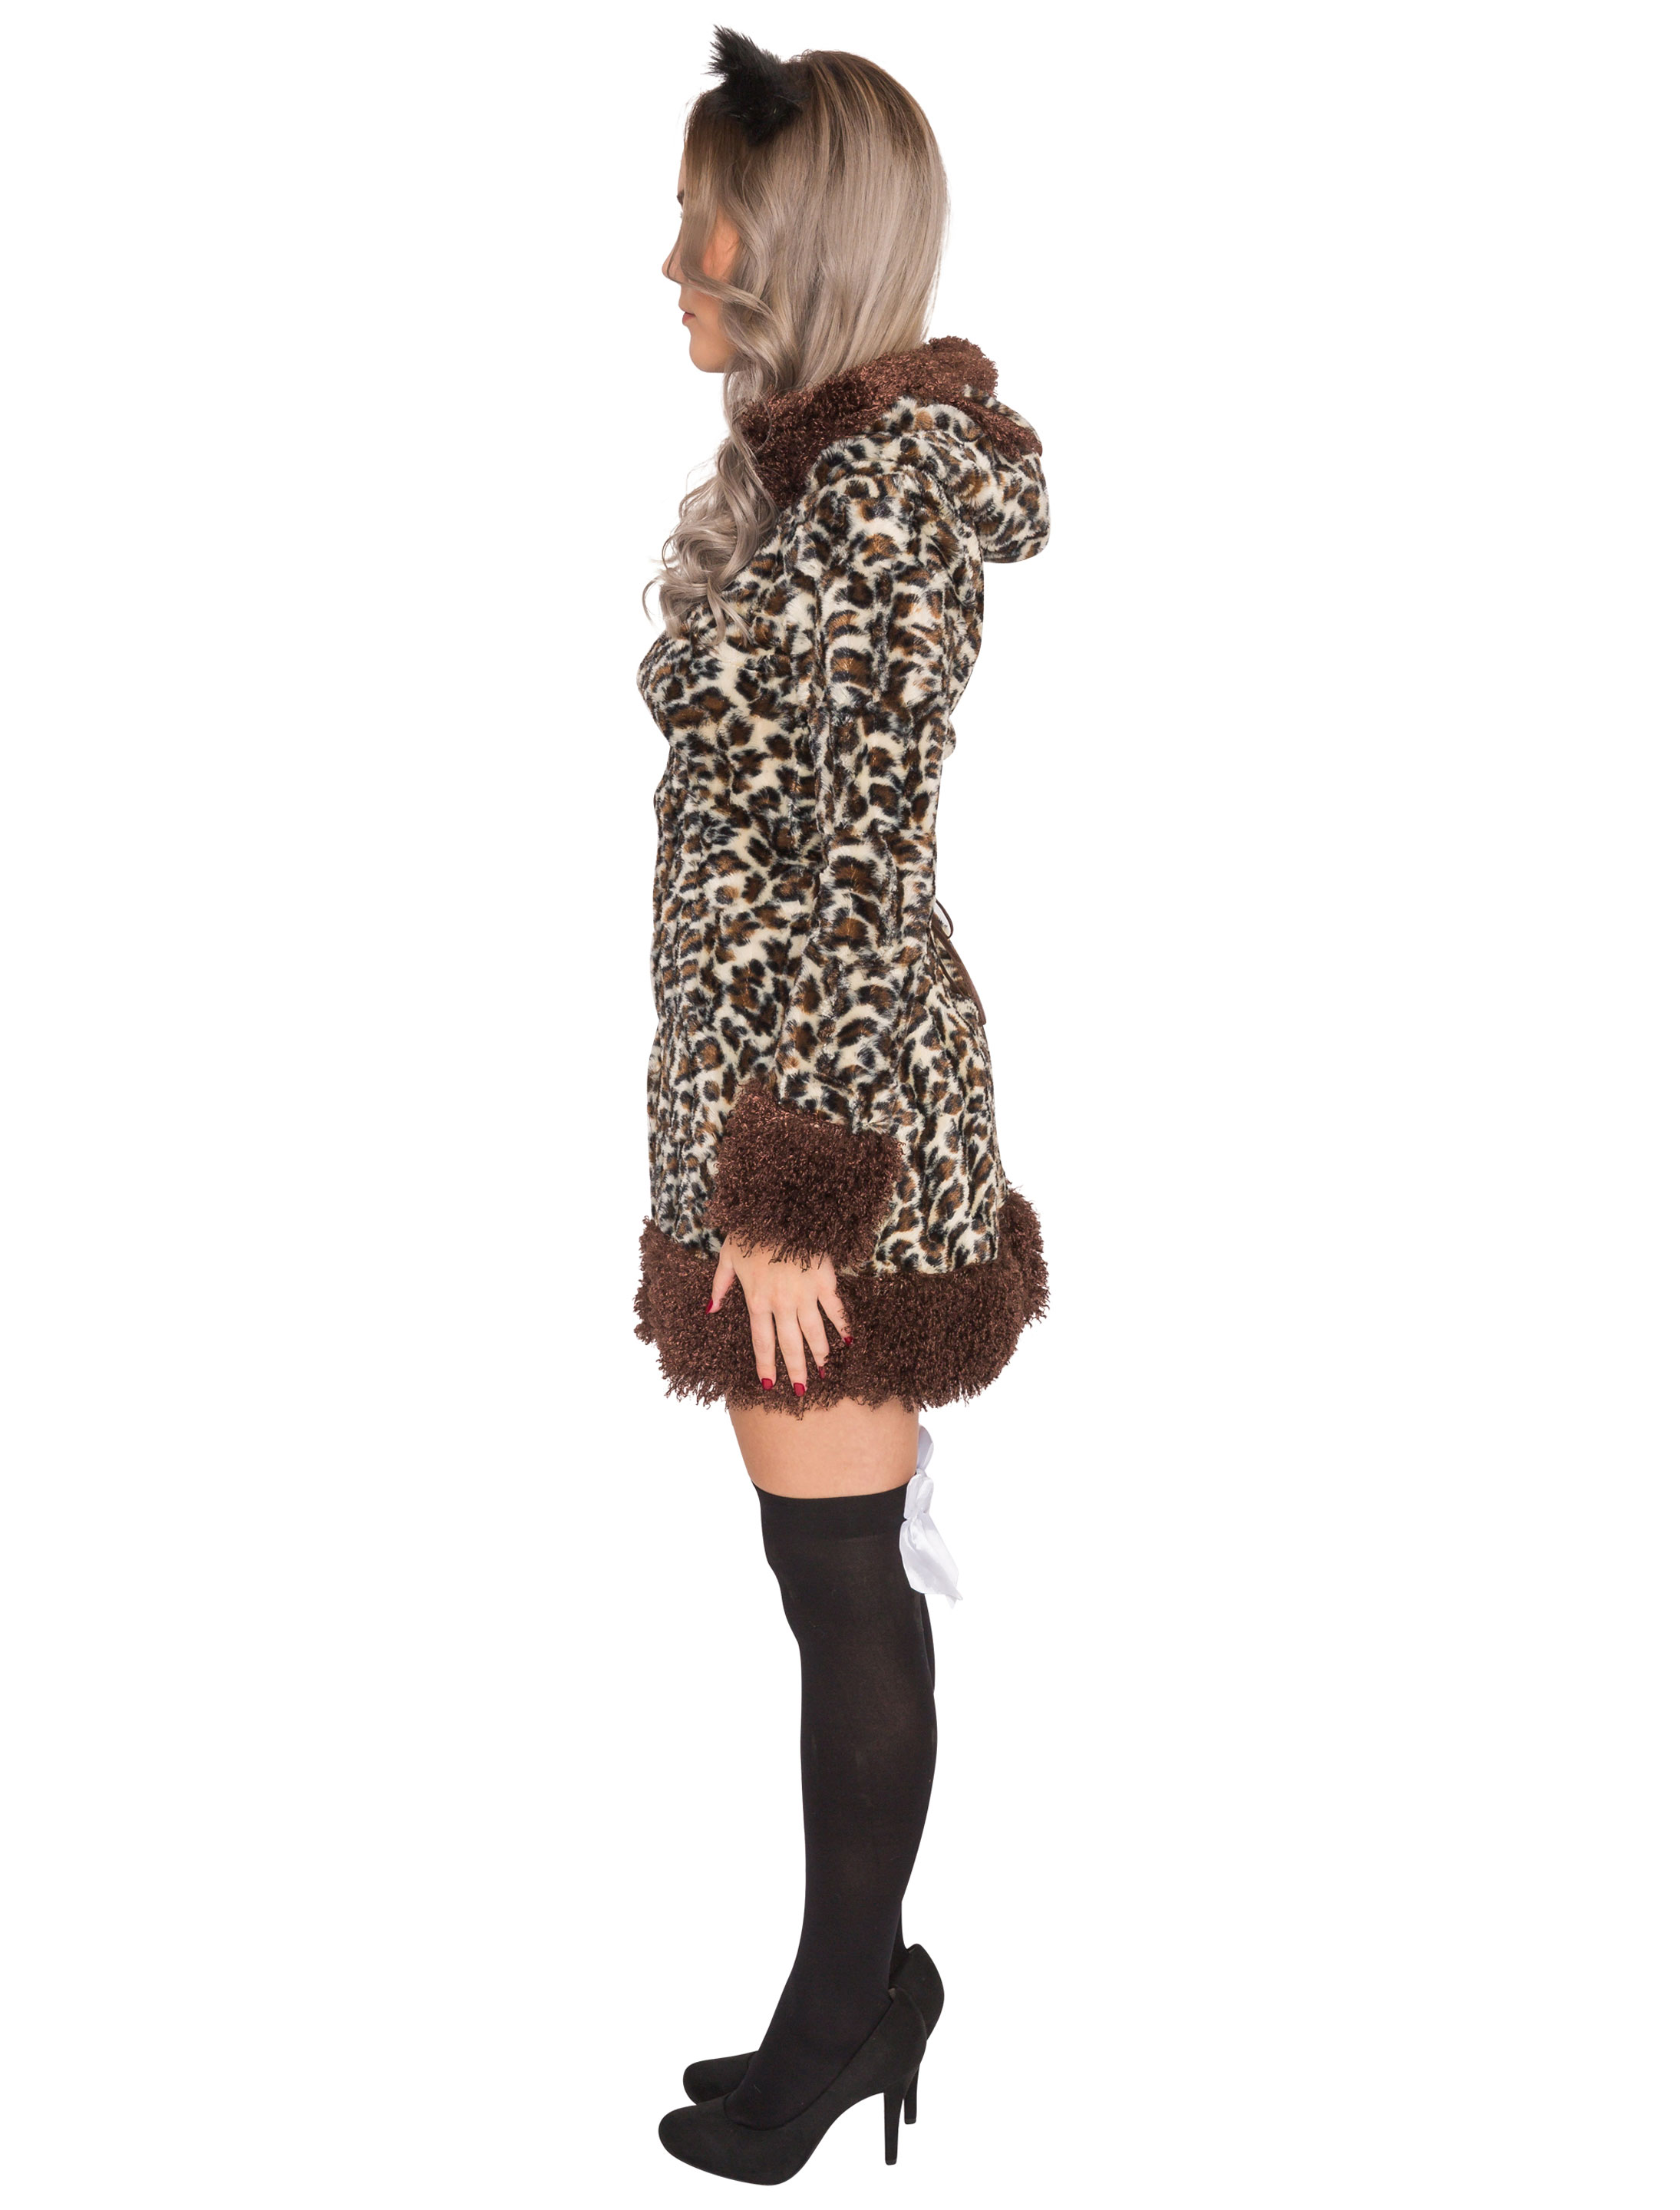 Kleid Leopard Damen braun S